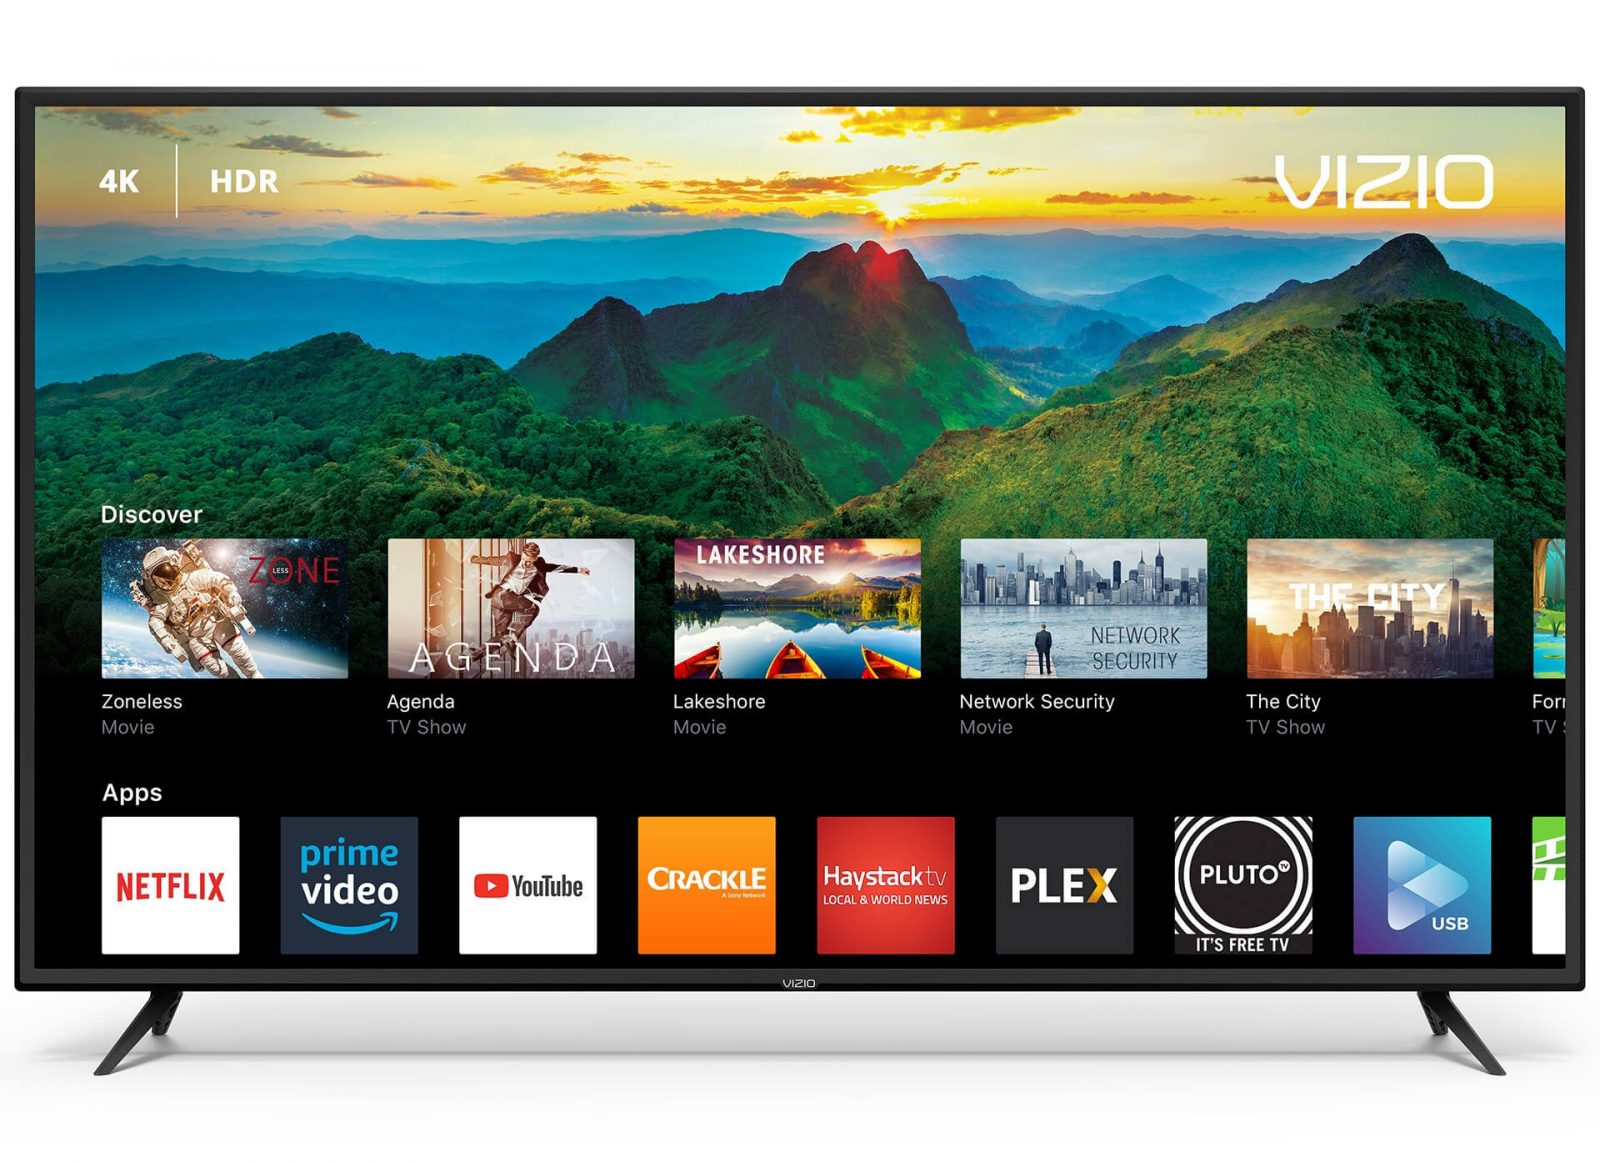 windows 10 screen cast to vizio smart tv